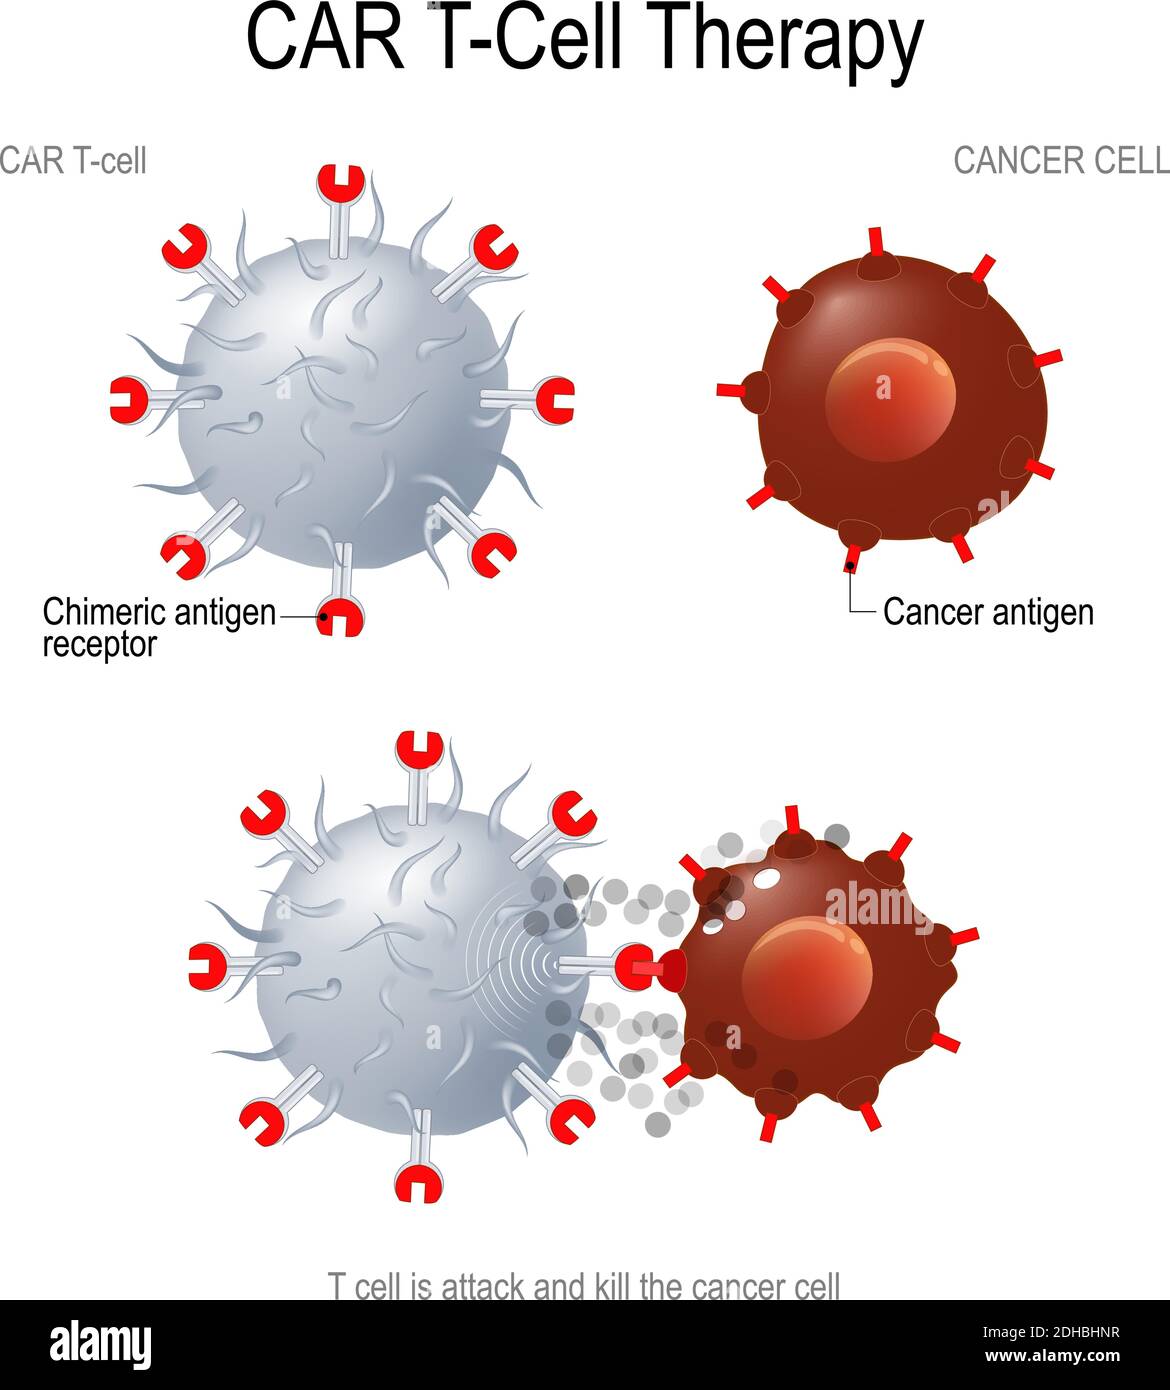 IMMUNOTERAPIA CAR T. I recettori artificiali delle cellule T sono proteine che sono state ingegnerizzate per la terapia del cancro (uccisione di cellule tumorali). Illustrazione Vettoriale